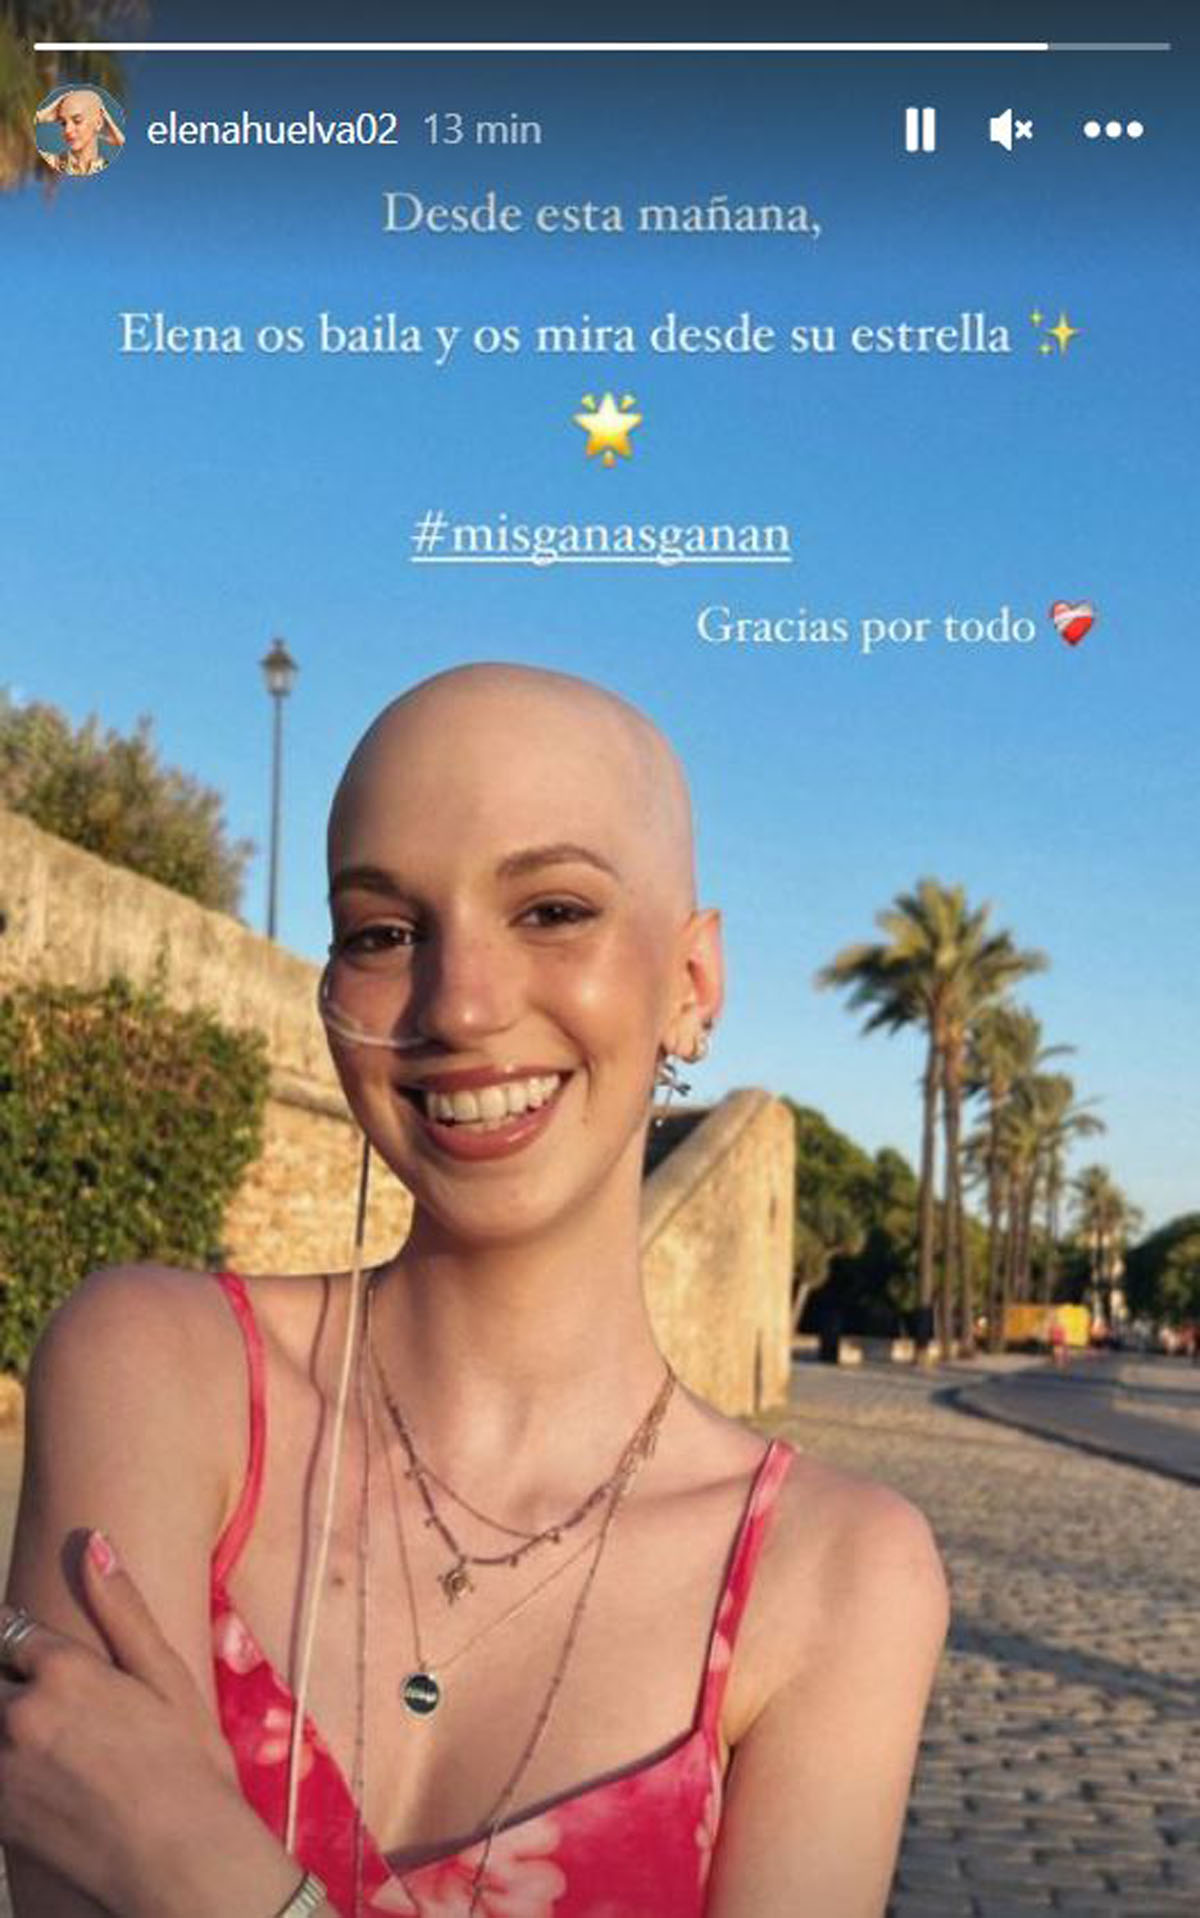 Los famosos lloran la muerte de Elena Huelva, la influencer que muere de cáncer a los 20 años